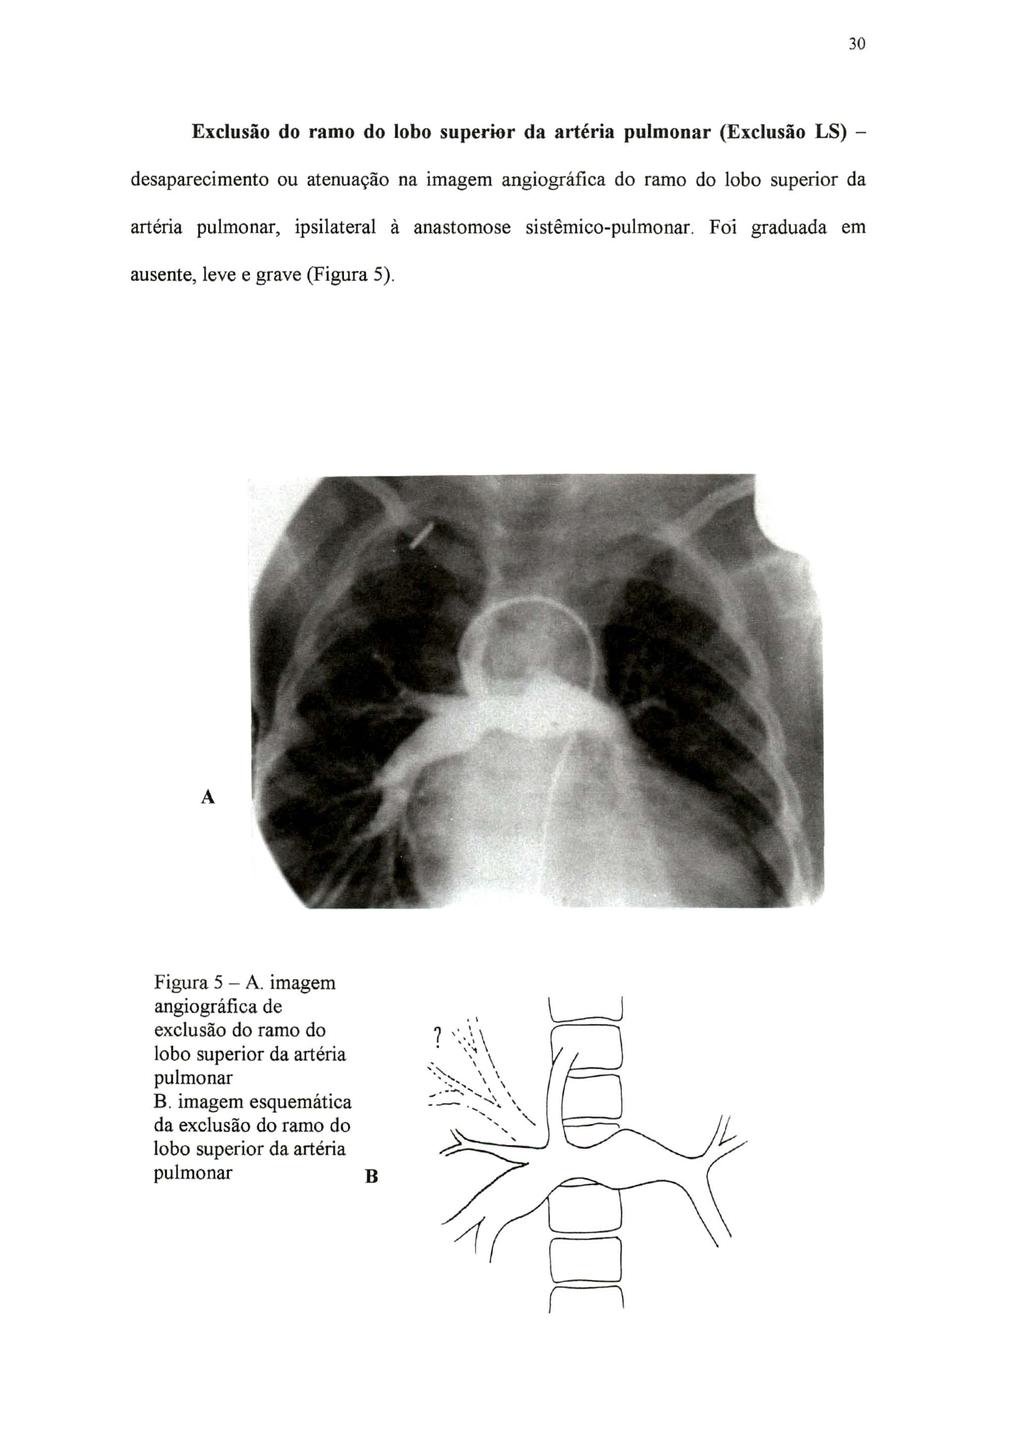 30 Exclusão do ramo do lobo superior da artéria pulmonar (Exclusão LS) - desaparecimento ou atenuação na imagem angiográfica do ramo do lobo superior da artéria pulmonar, ipsilateral à anastomose